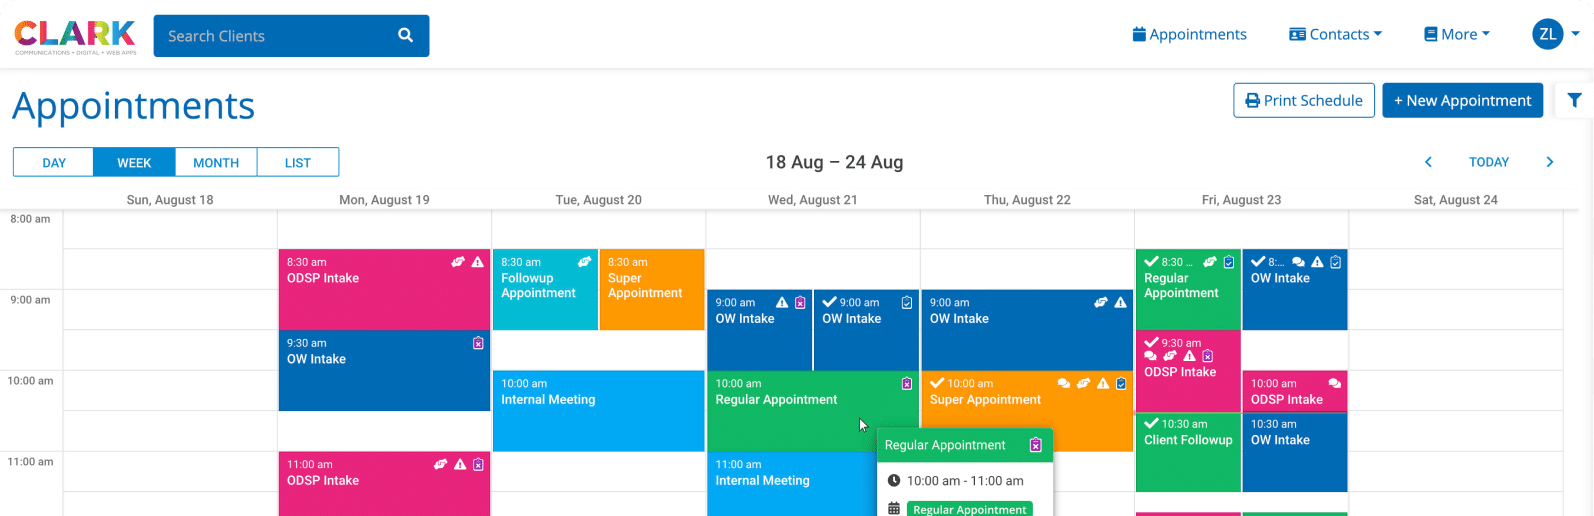 Clark Integrated Team Scheduler - Calendar Week View